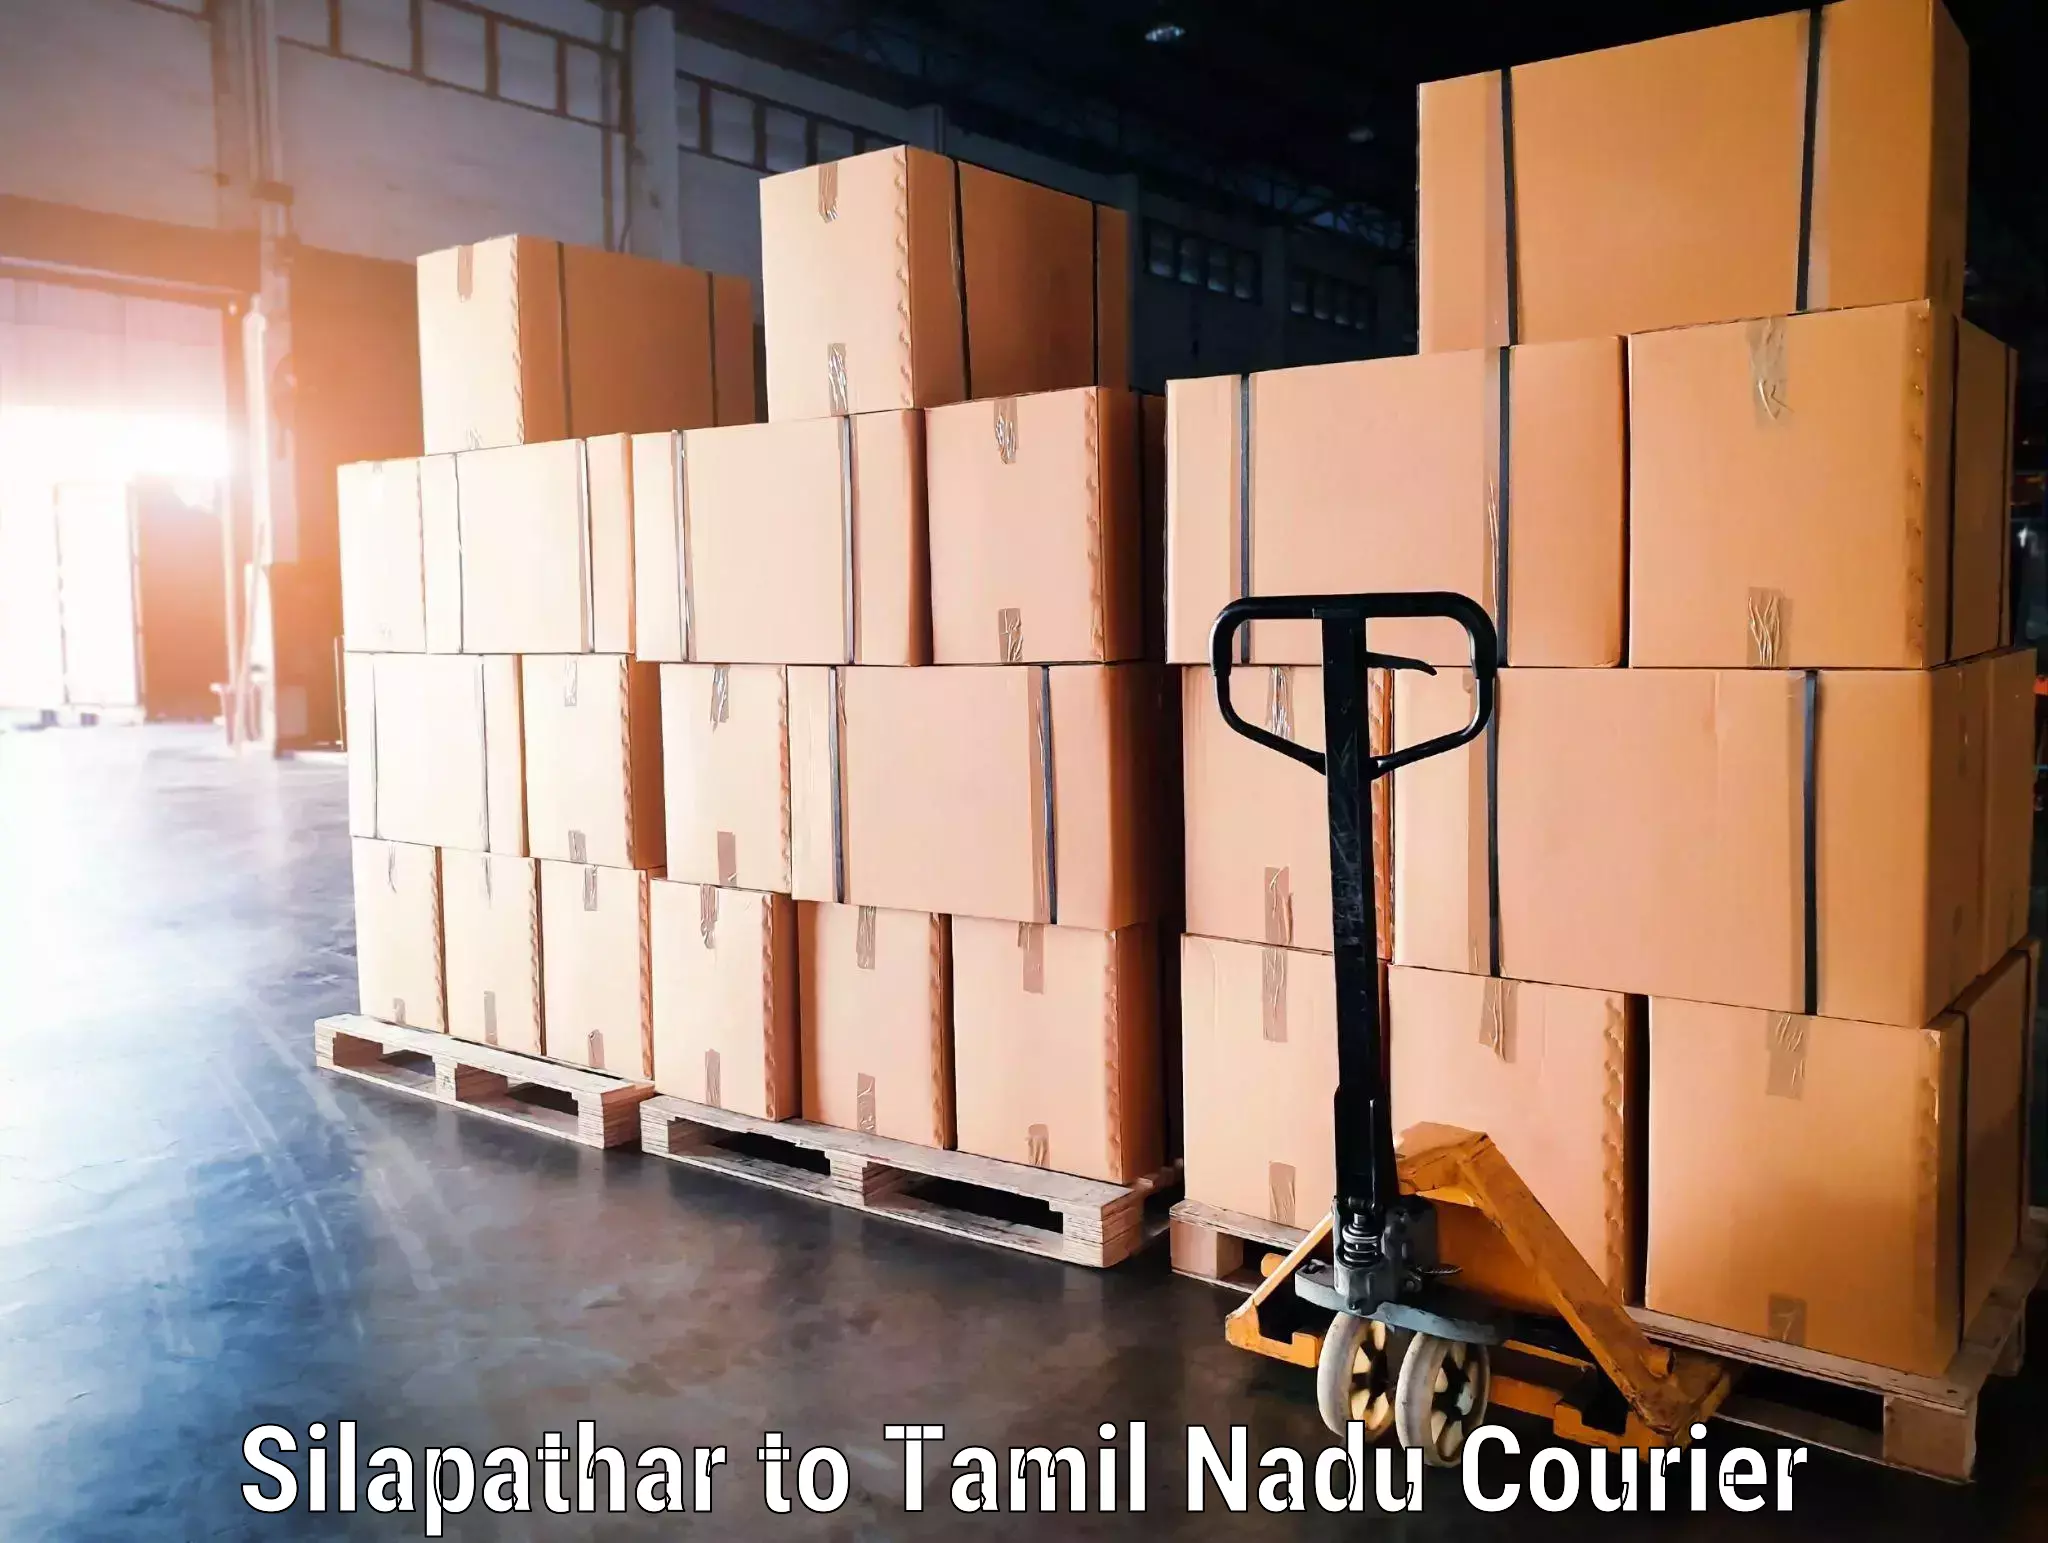 Luggage shipment specialists Silapathar to Denkanikottai